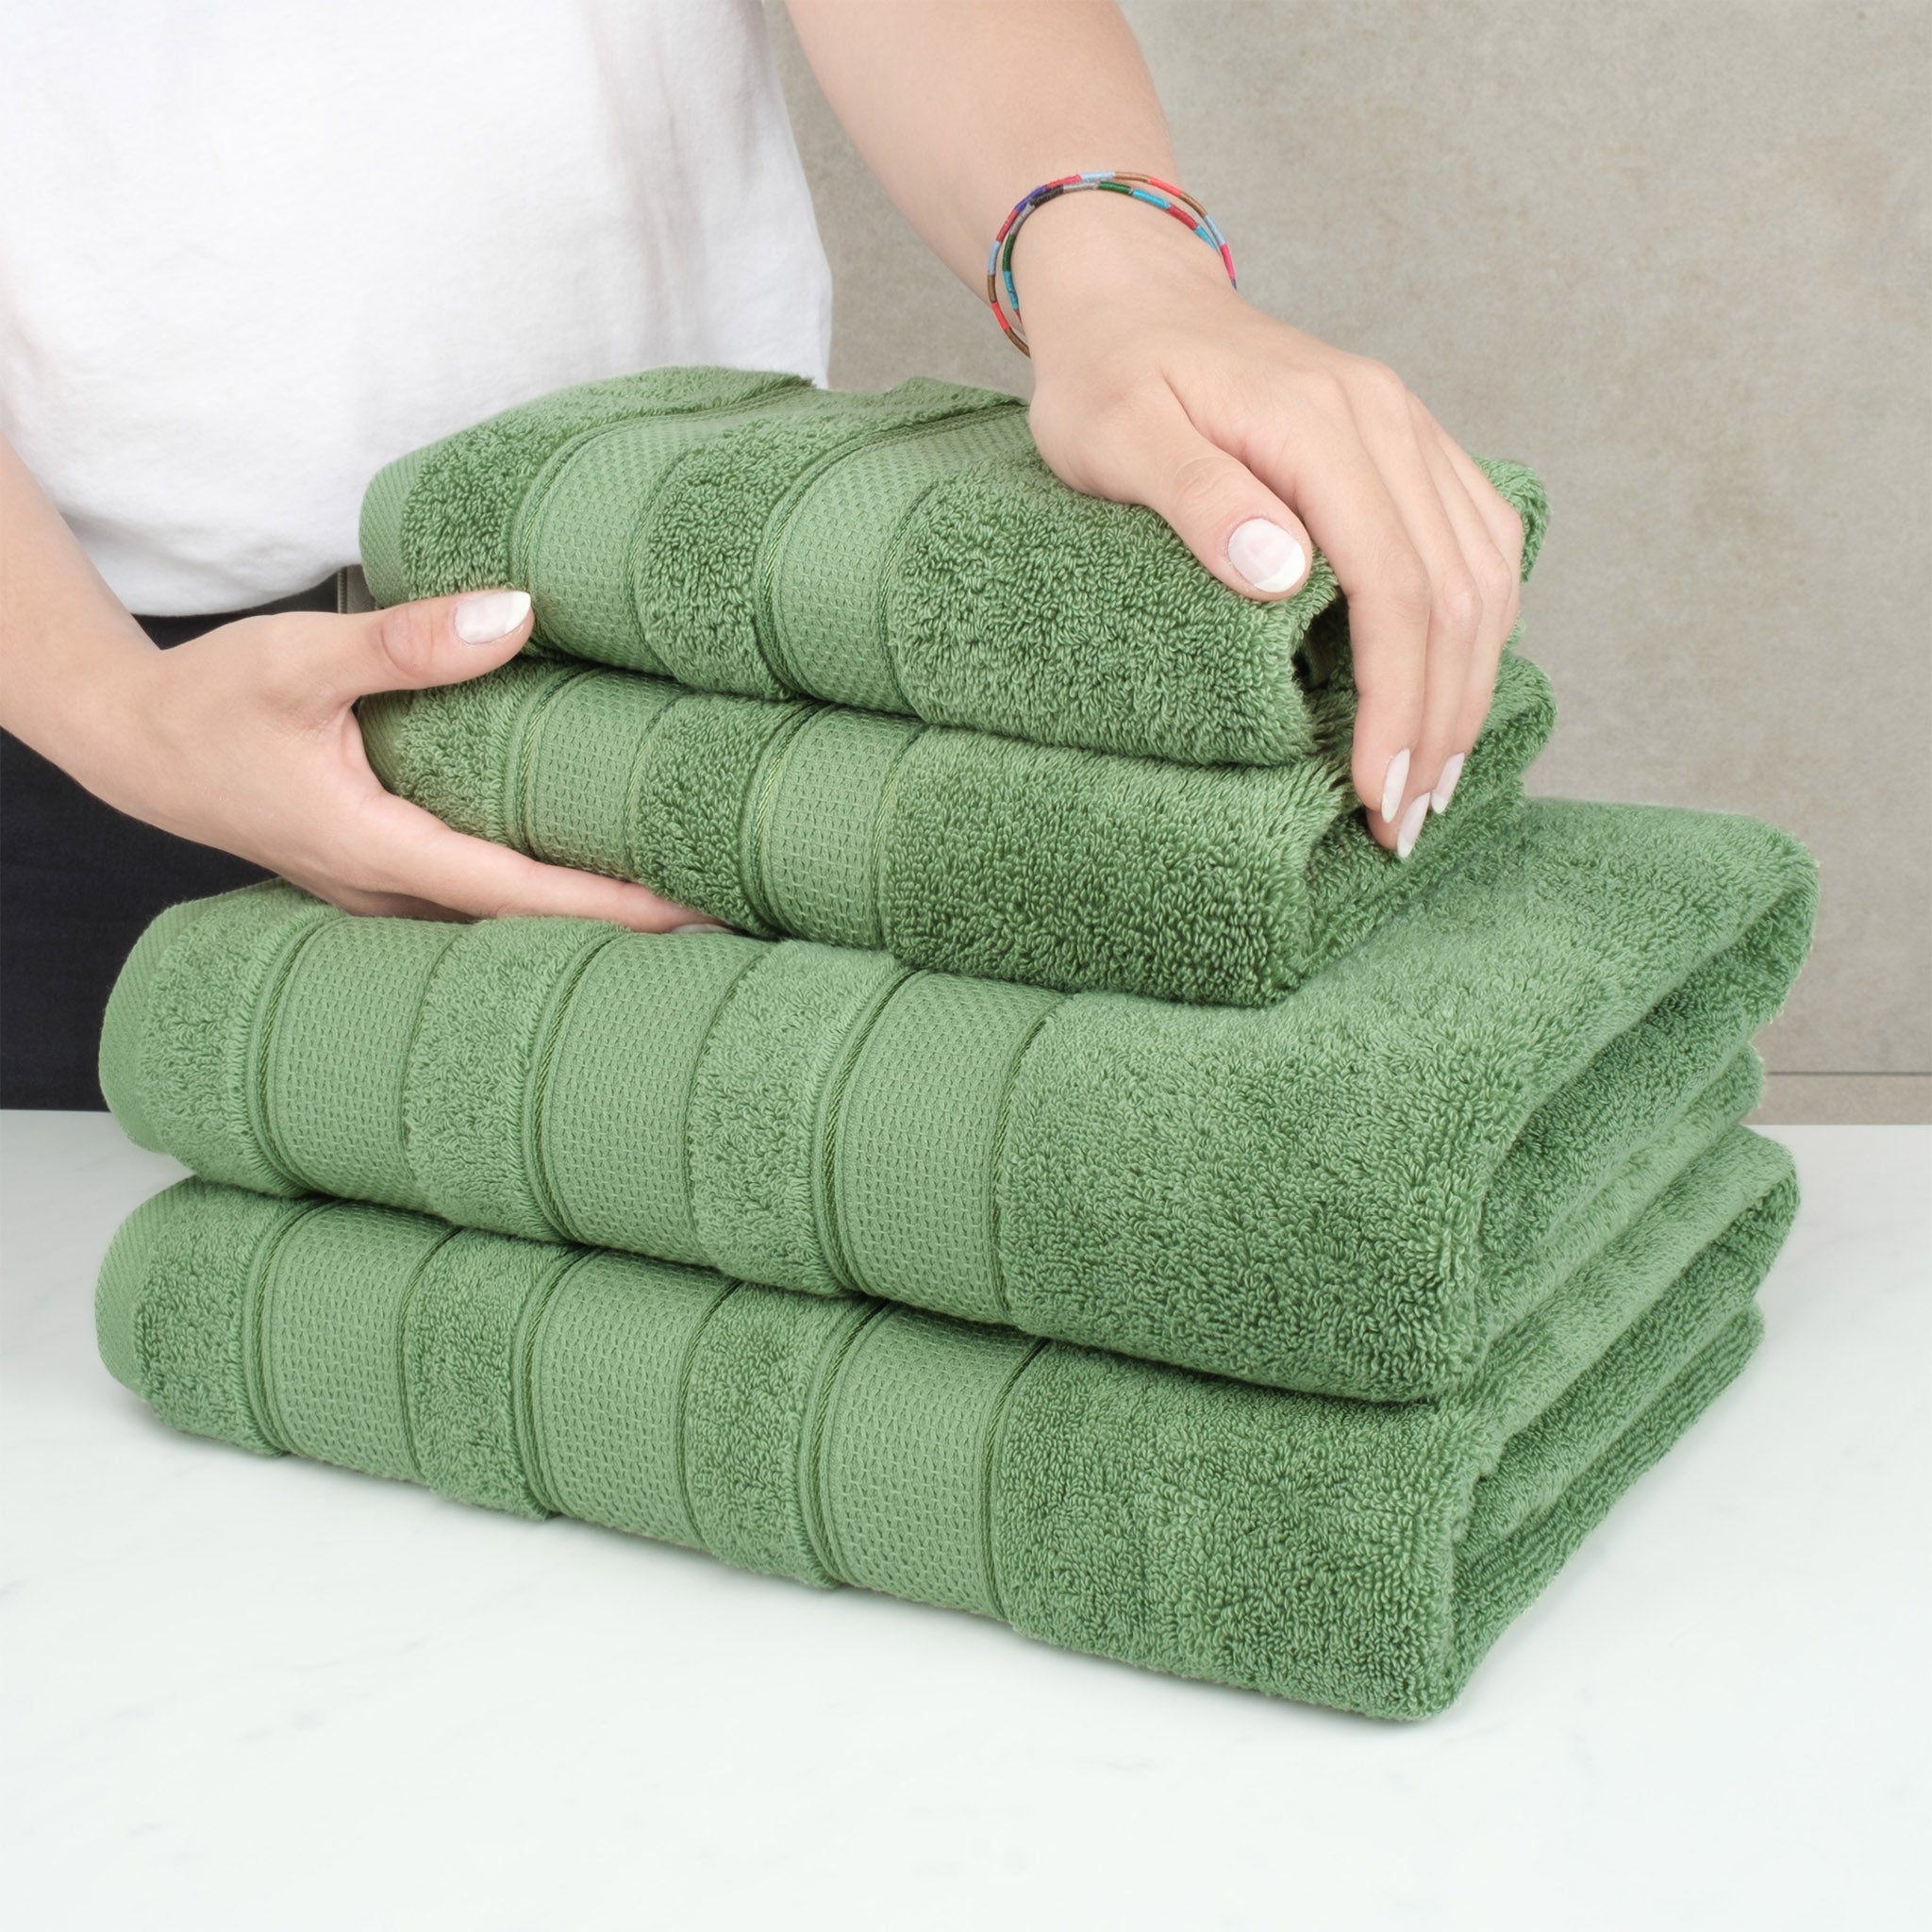 Lavish Home 100% Cotton Hotel 6 Piece Towel Set - Green, 1 unit - Kroger